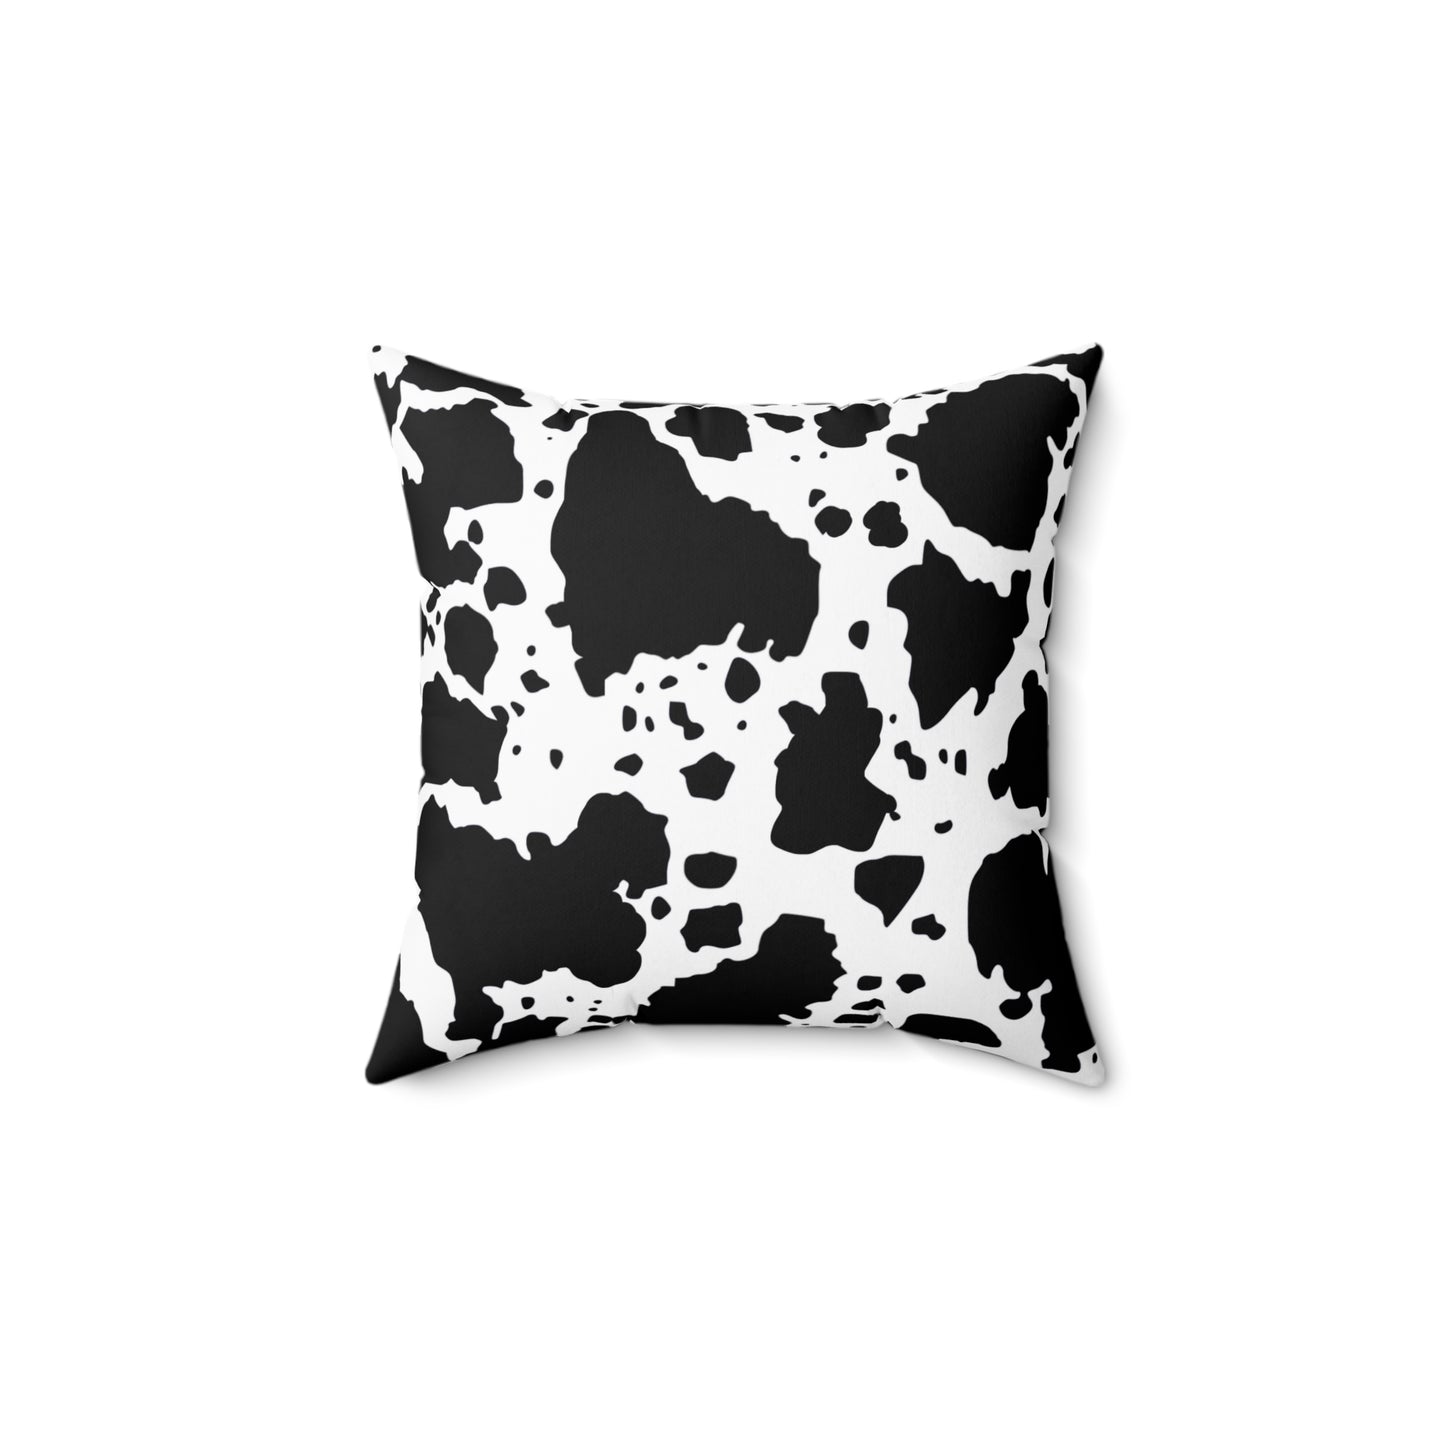 Cow print Spun Polyester Square Pillow